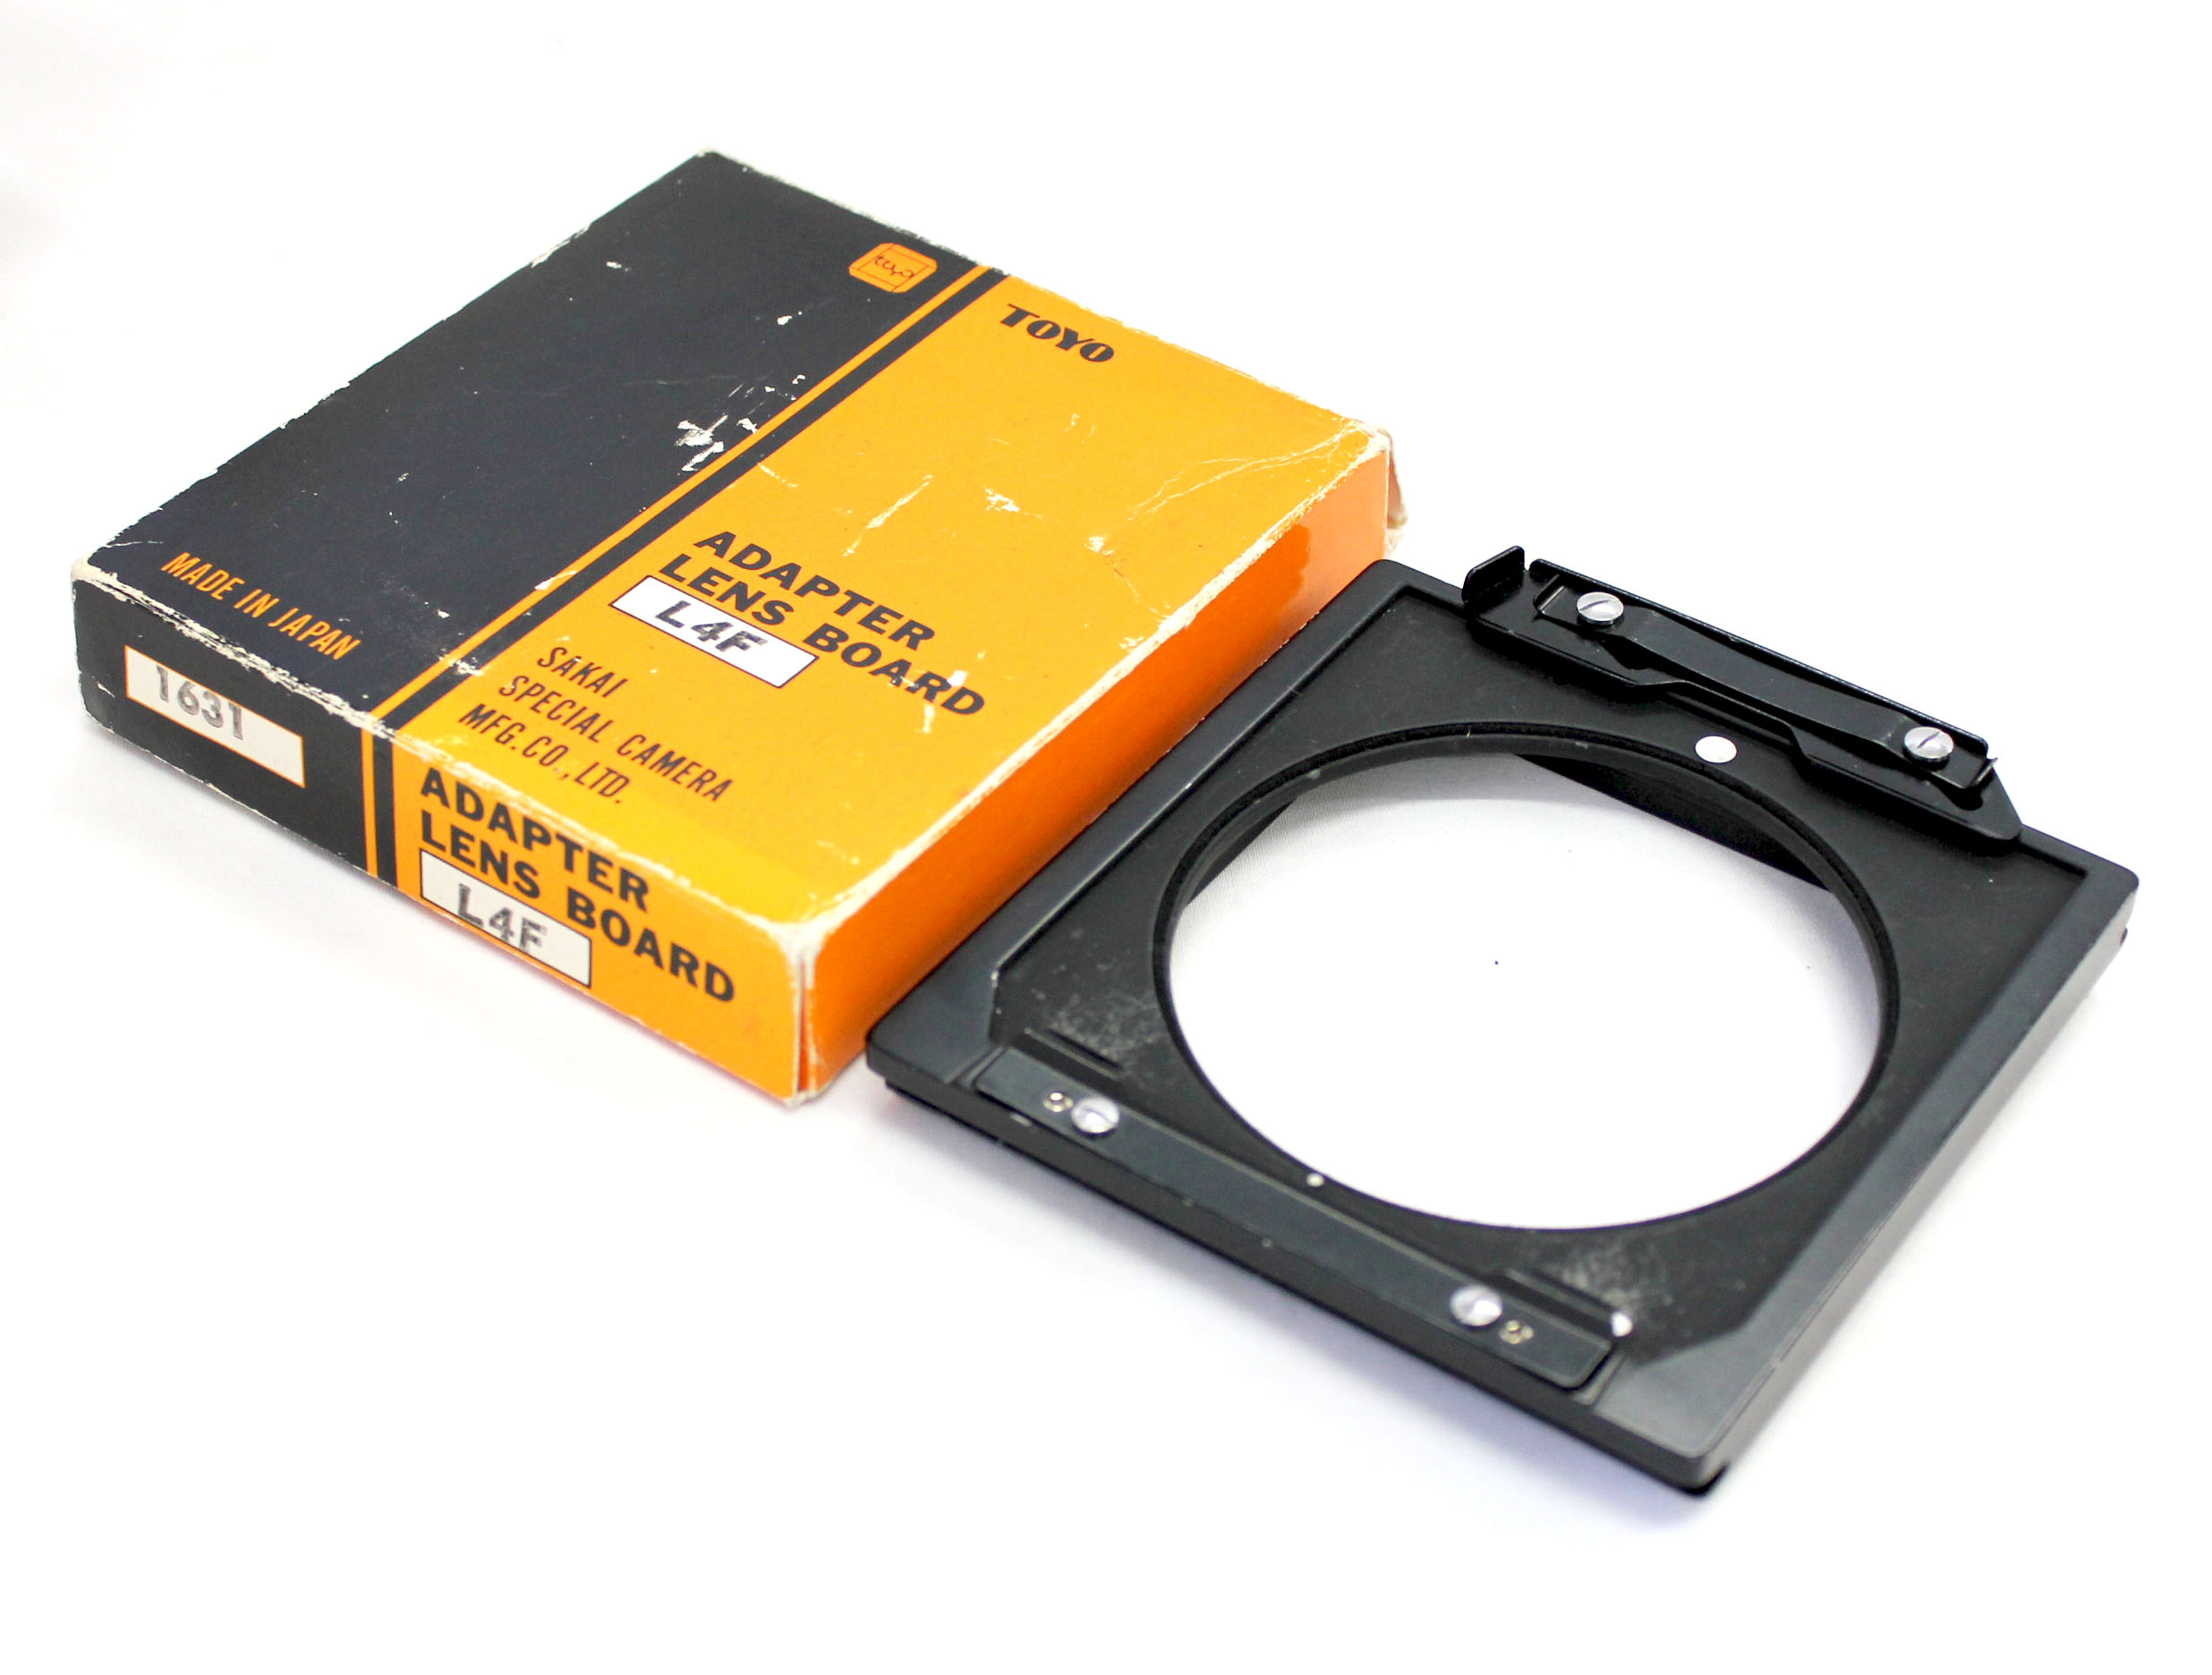 Toyo Linhof Lens Board Adapter No.1631 AL4F for Toyo Field 45A 45A II in Box from Japan